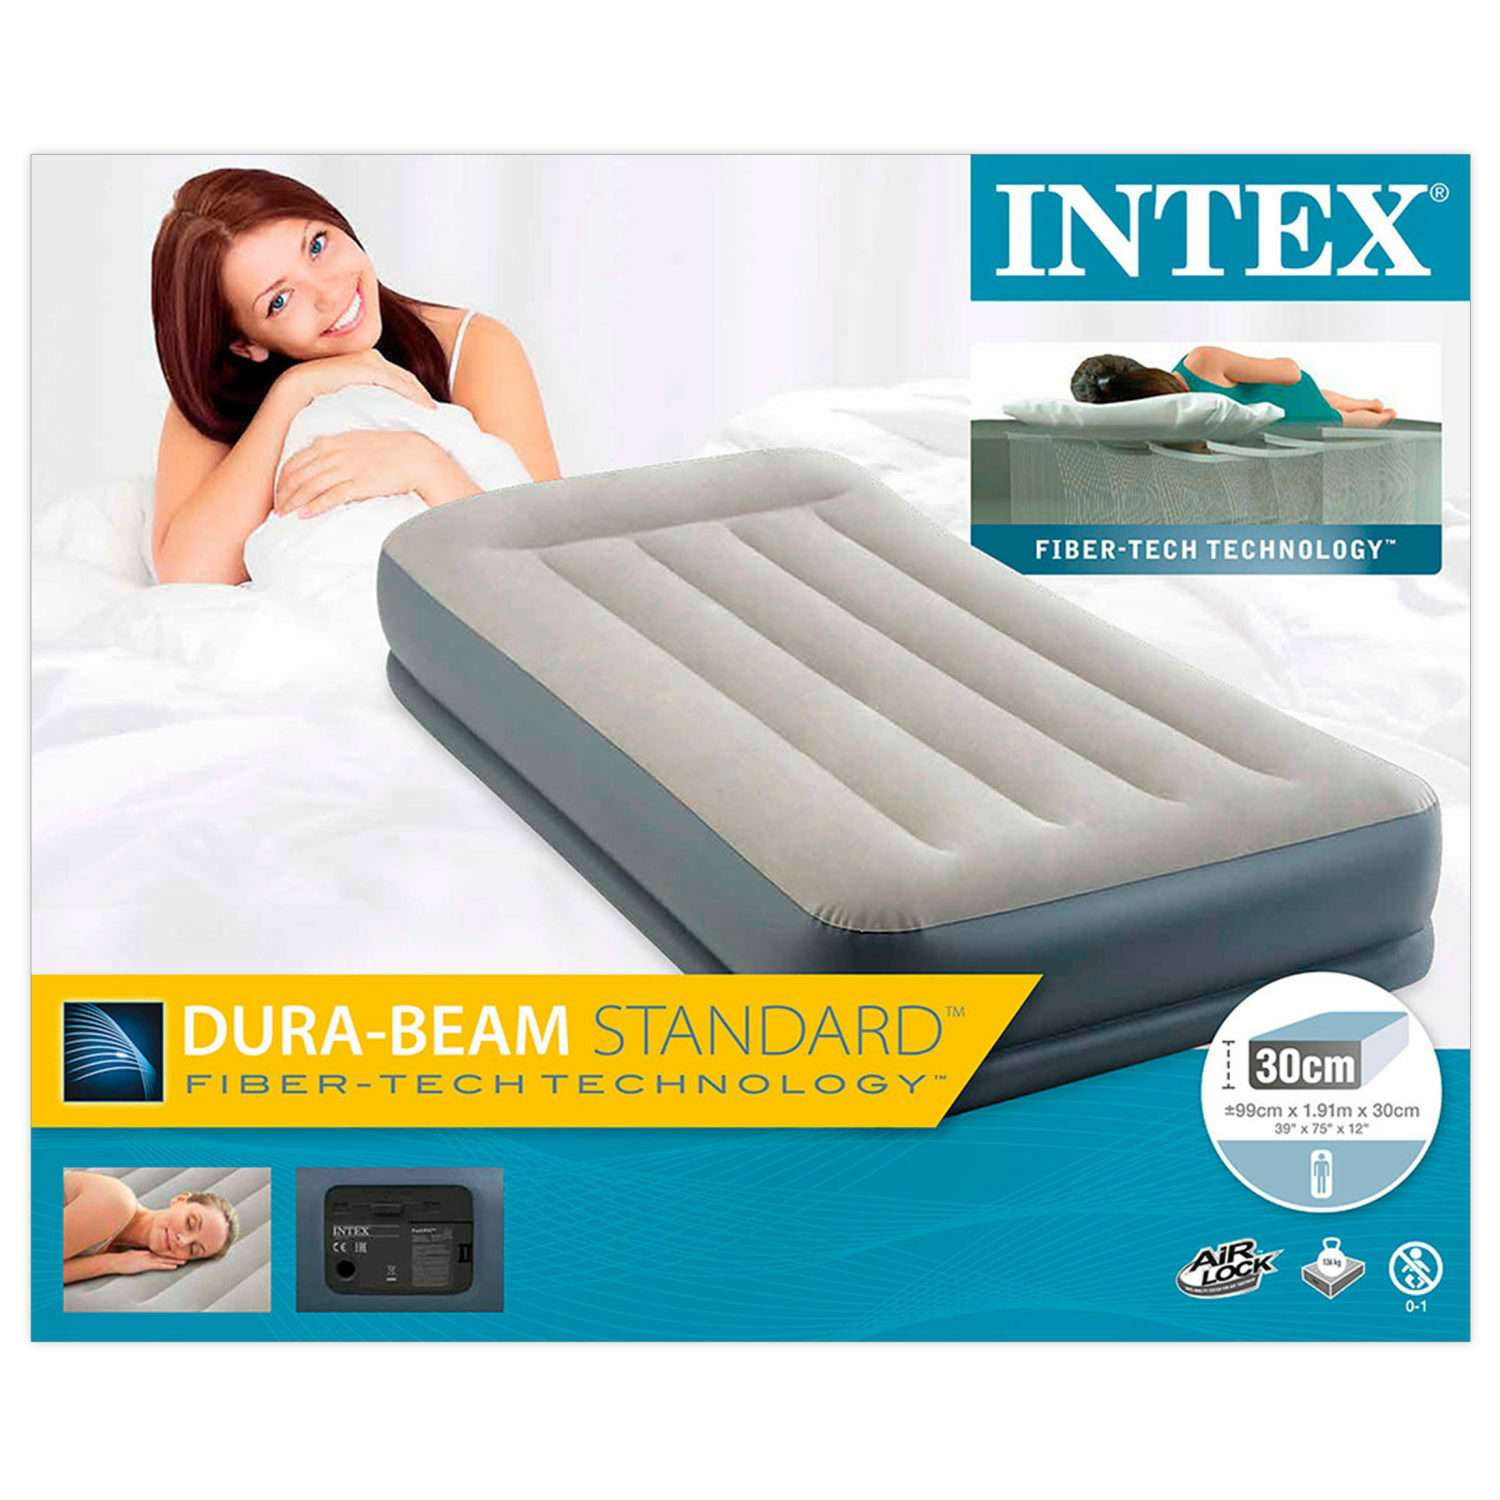 Надувной матрас INTEX Кровать бим стандарт с встроенным насосом 99х191х30 см - фото 2